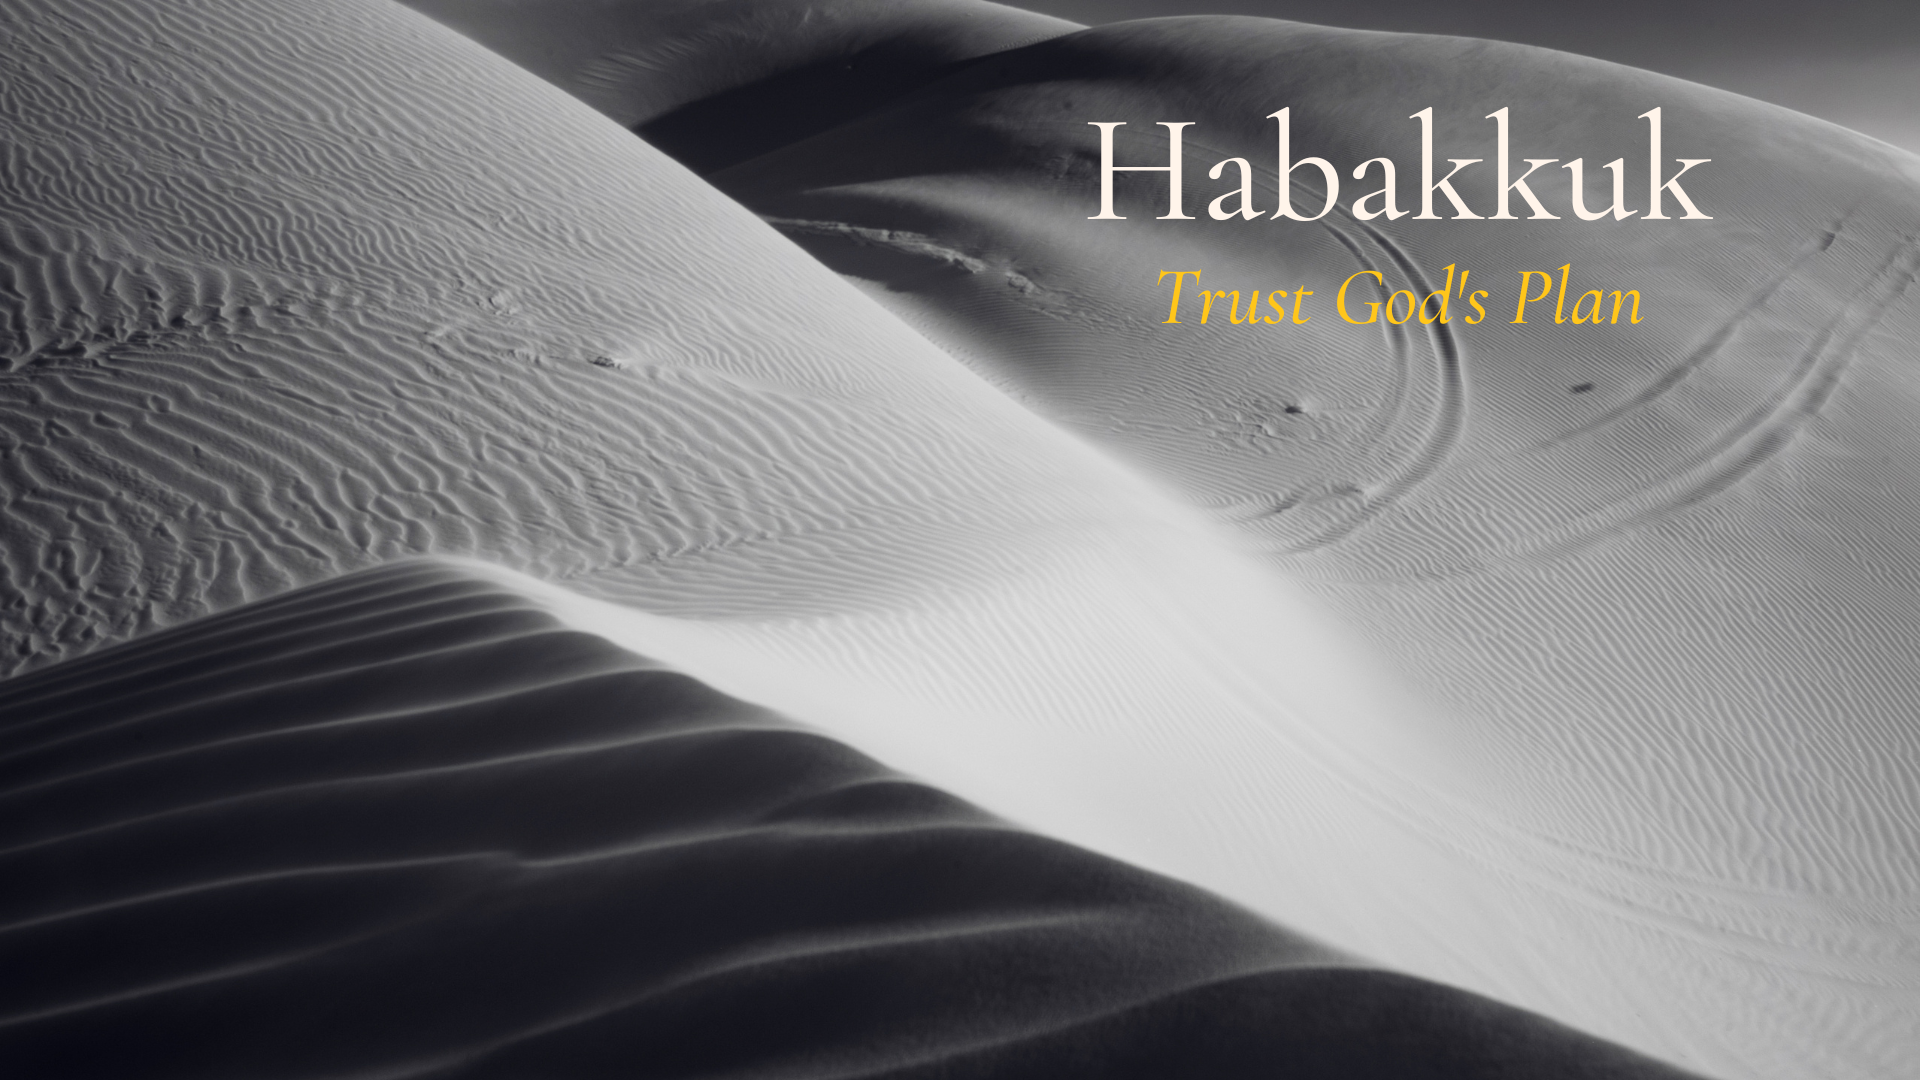 Habakkuk’s Song of Faith